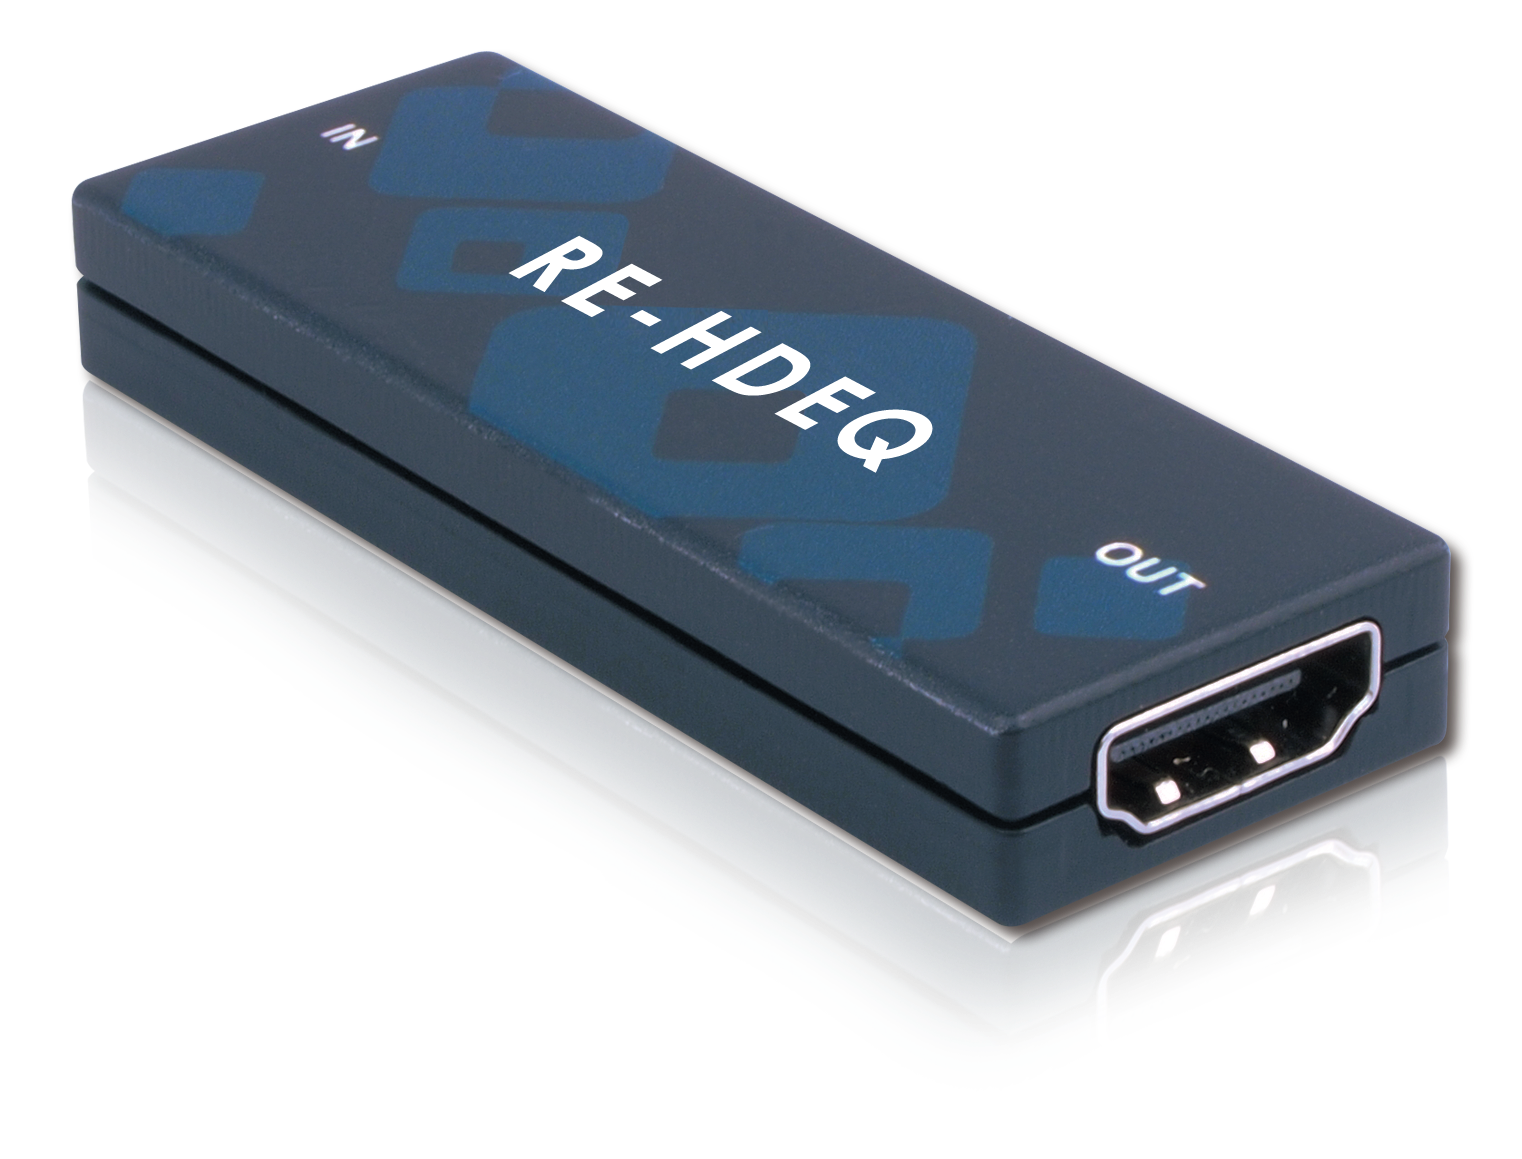 RELAY (Répéteurs / Egaliseurs HDMI 1.3) Re-hdeq Equalizer Hdmi 1